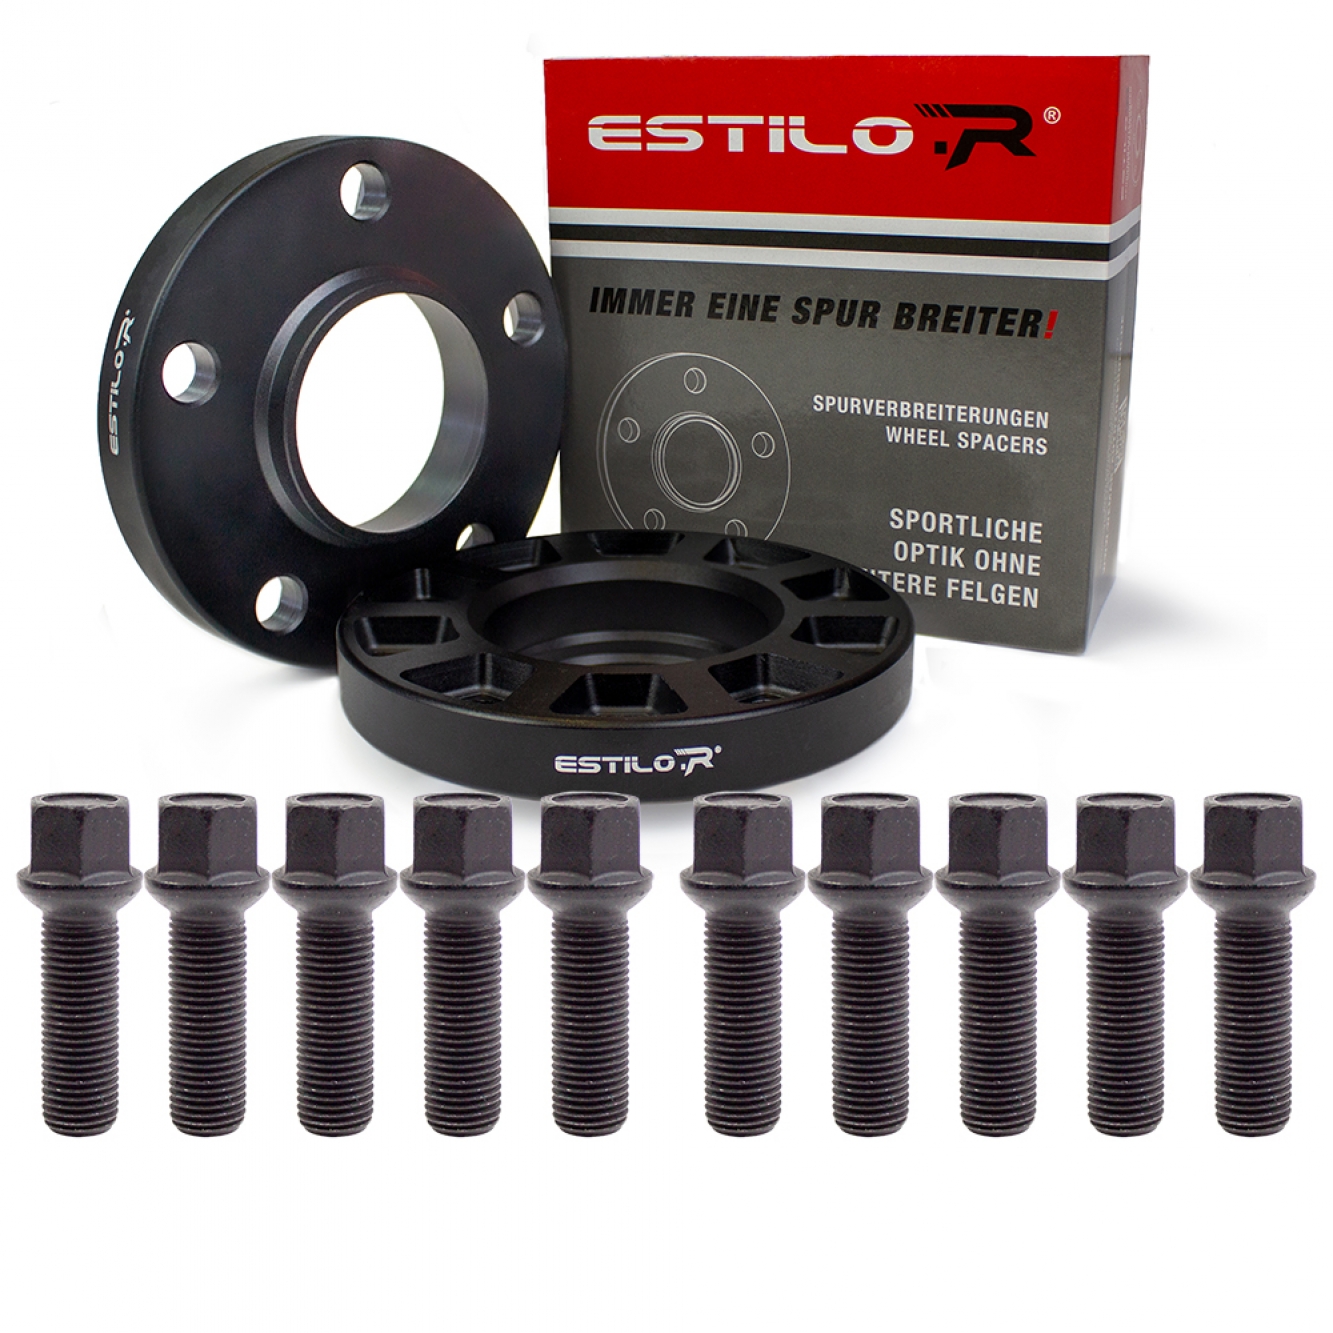 Estilo-R Alu Schwarz Spurverbreiterungs-Set mit Radschrauben und ABE für Audi 30mm pro Achse LK 112/5 ZBD 66,5 eloxiert